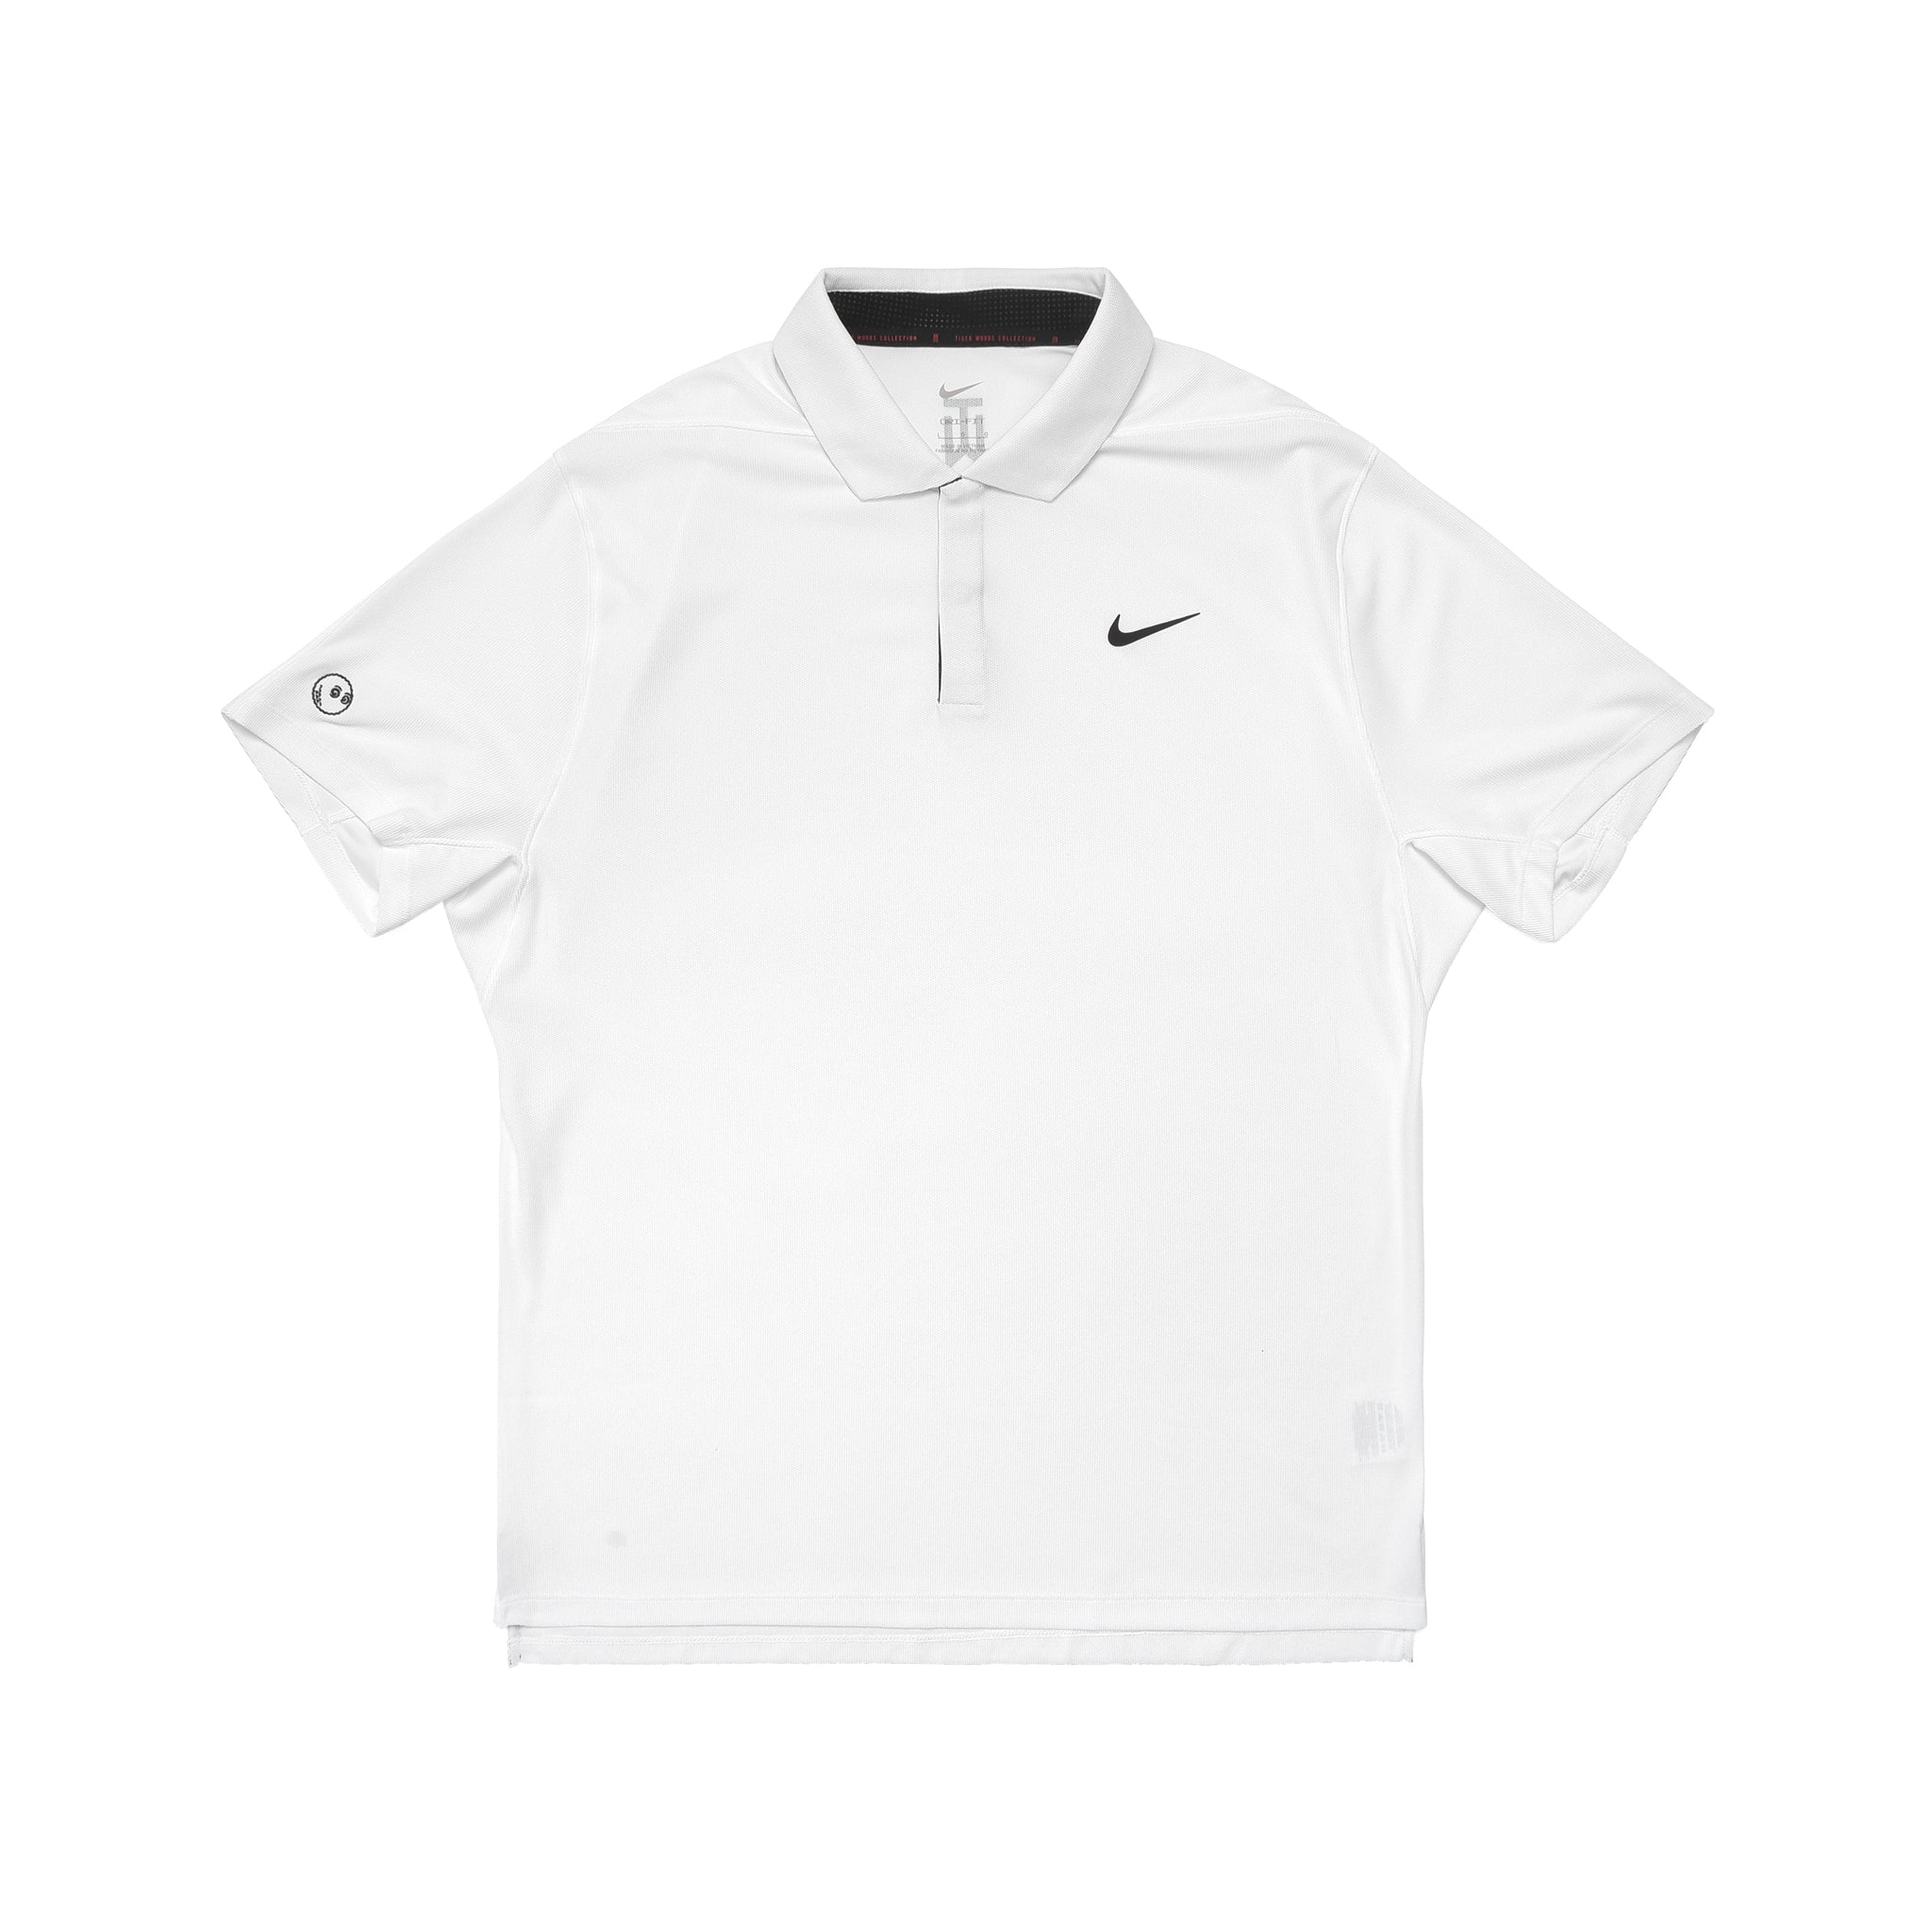 ブランド NIKE - Malbon x Nike Dri-FIT Tiger Woods Poloの通販 by TM's shop｜ナイキ